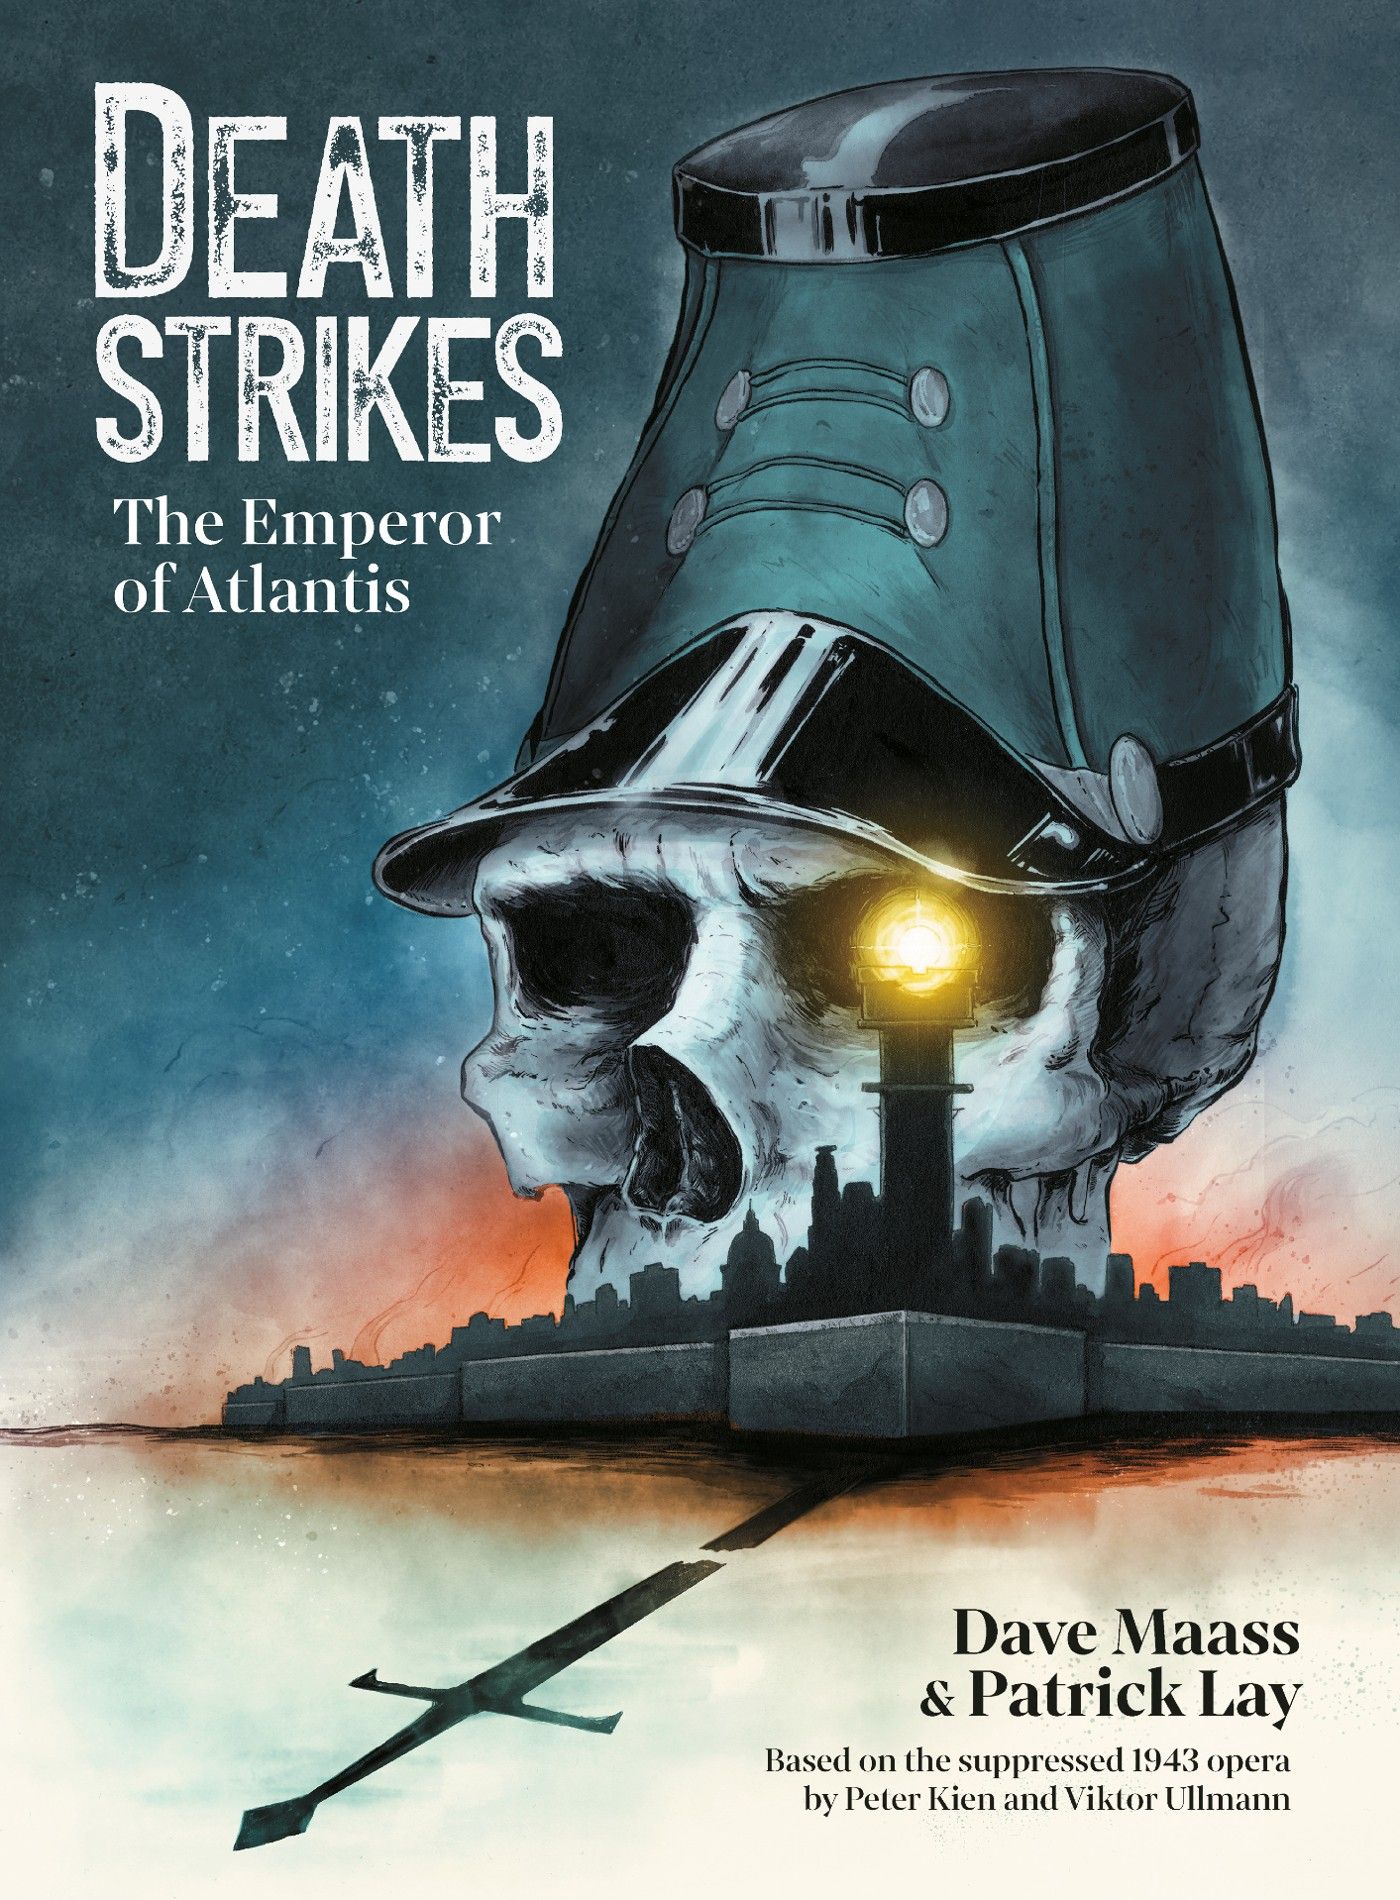 Death Strikes: The Emperor of Atlantis Preview (Exclusive)